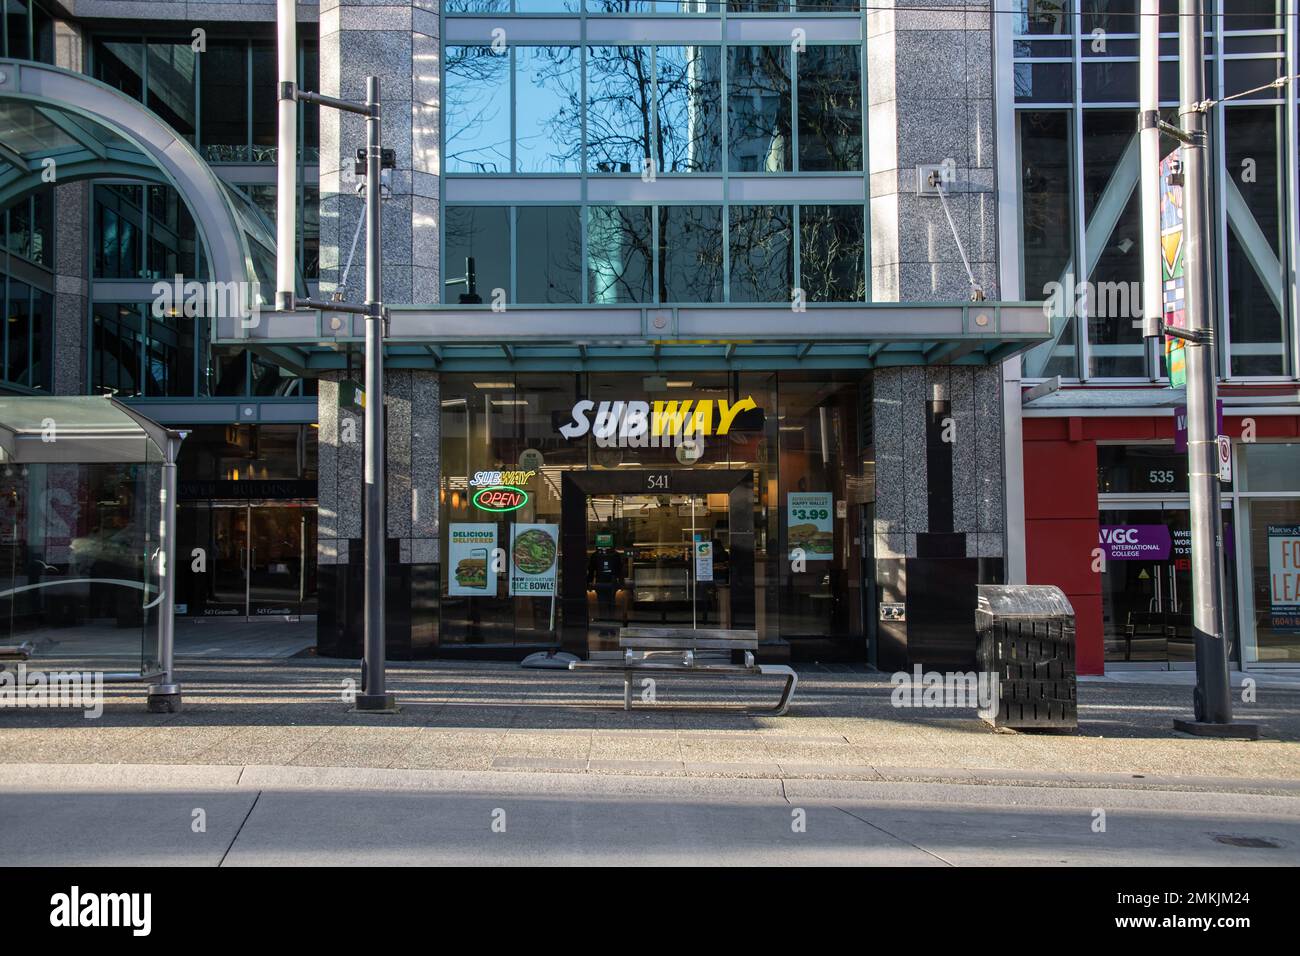 Storefront della metropolitana nel centro di Vancouver. Subway è un fast food americano in franchising specializzato in panini sottomarini (sub), involtini e bevande Foto Stock